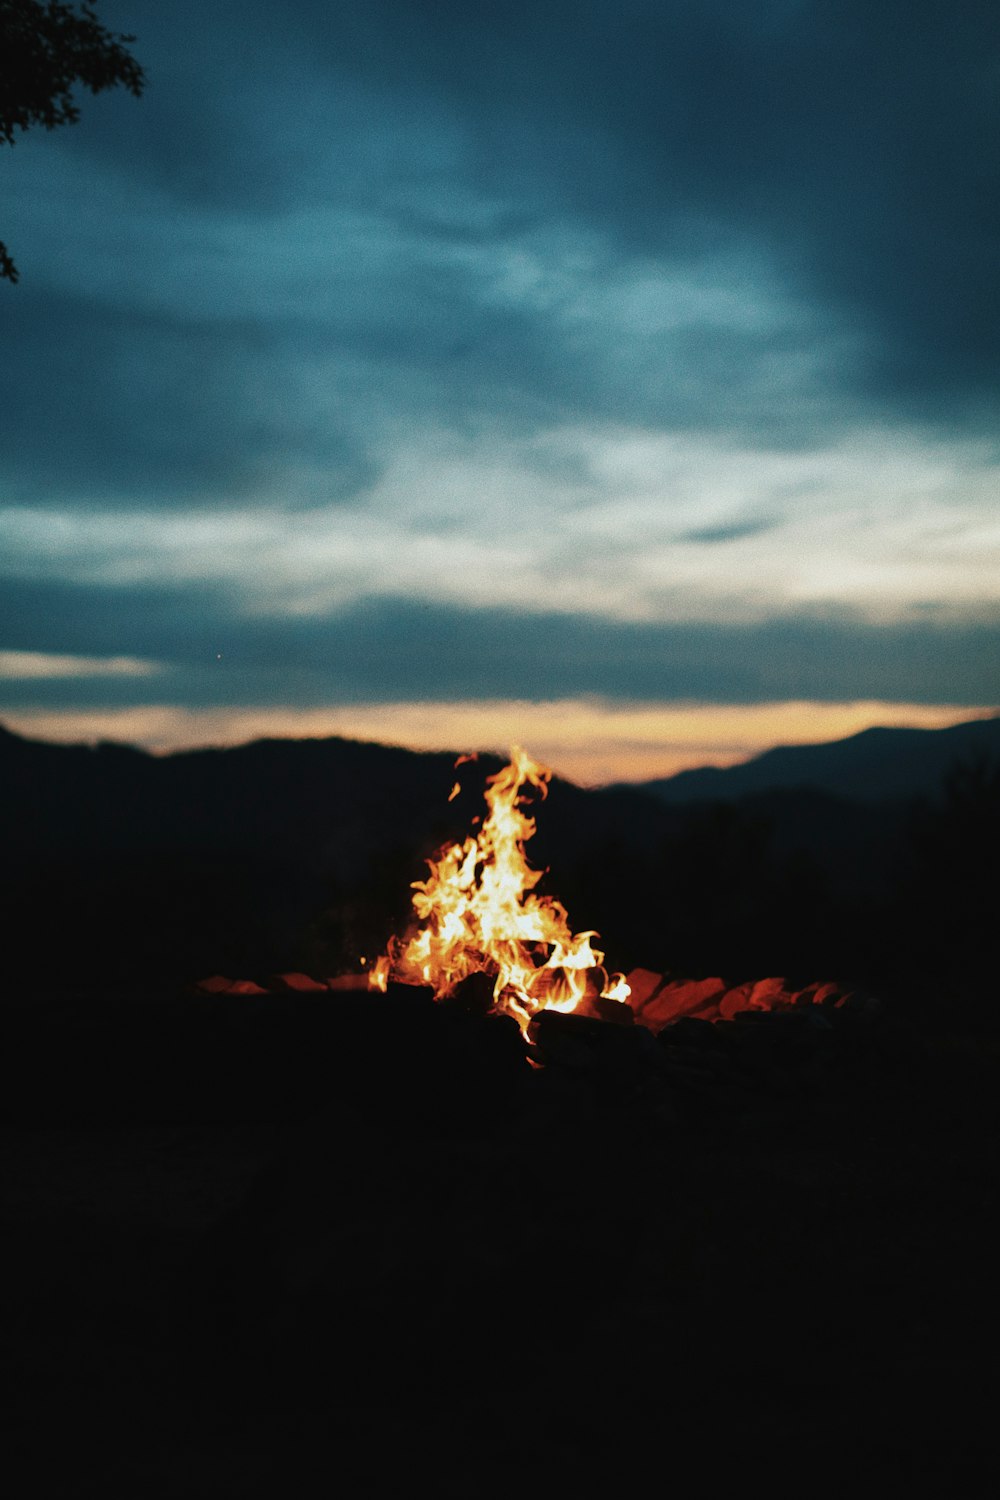 Photographie d’un feu de joie pendant la nuit